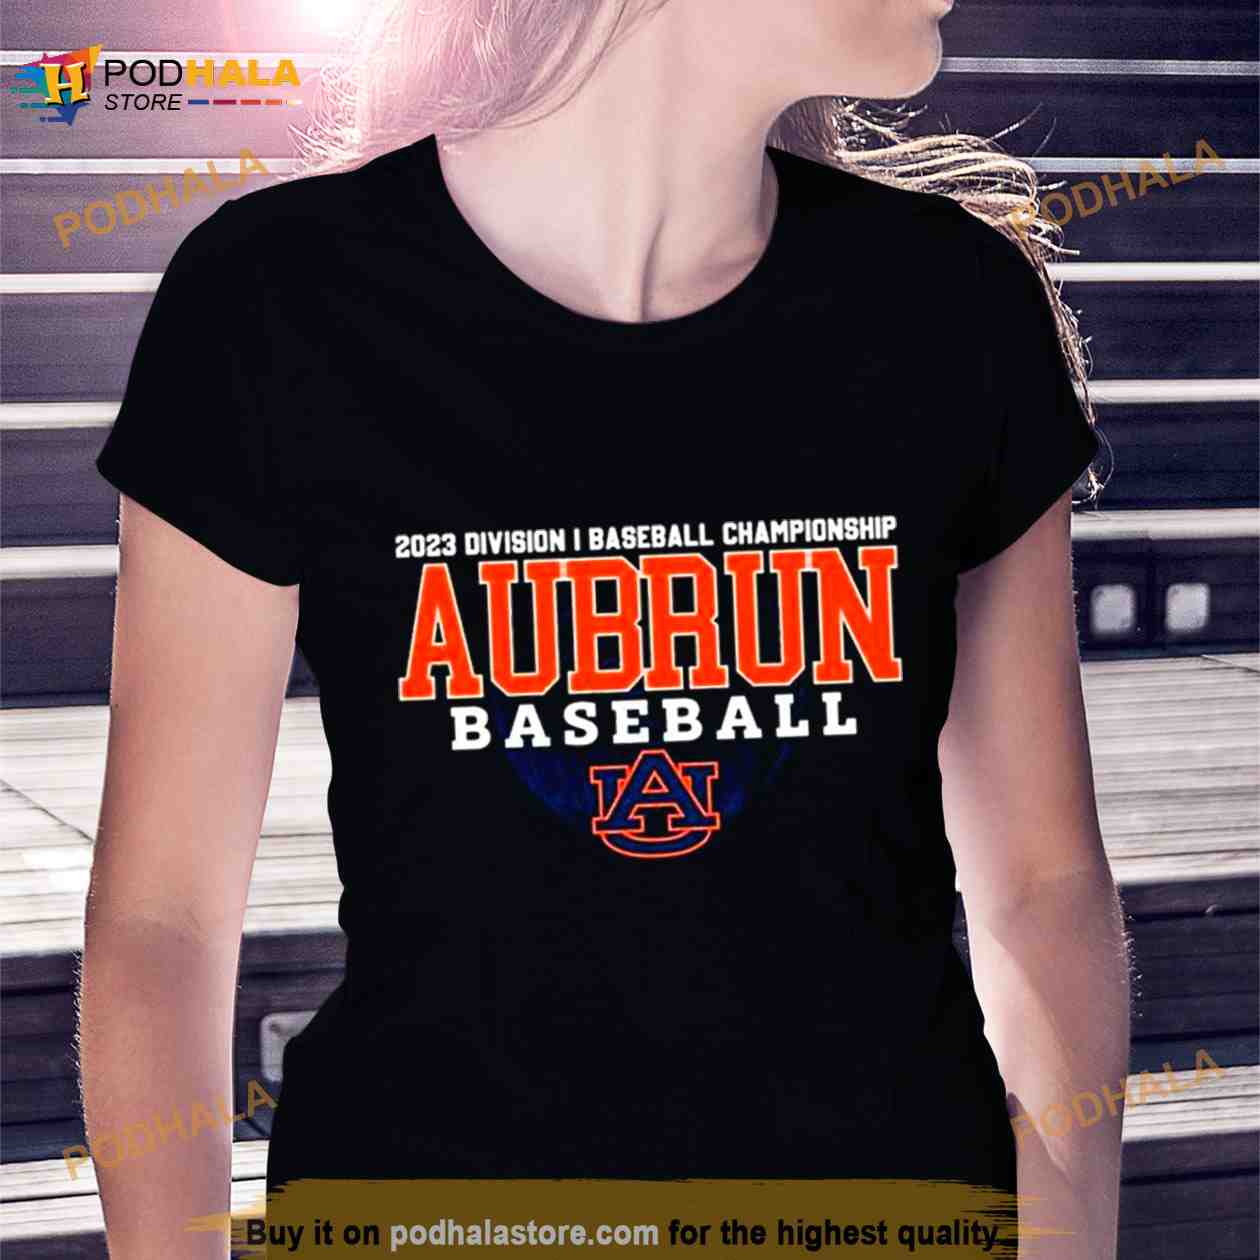 2023 Division I Champions Baseball Auburn Tigers Baseball Shirt